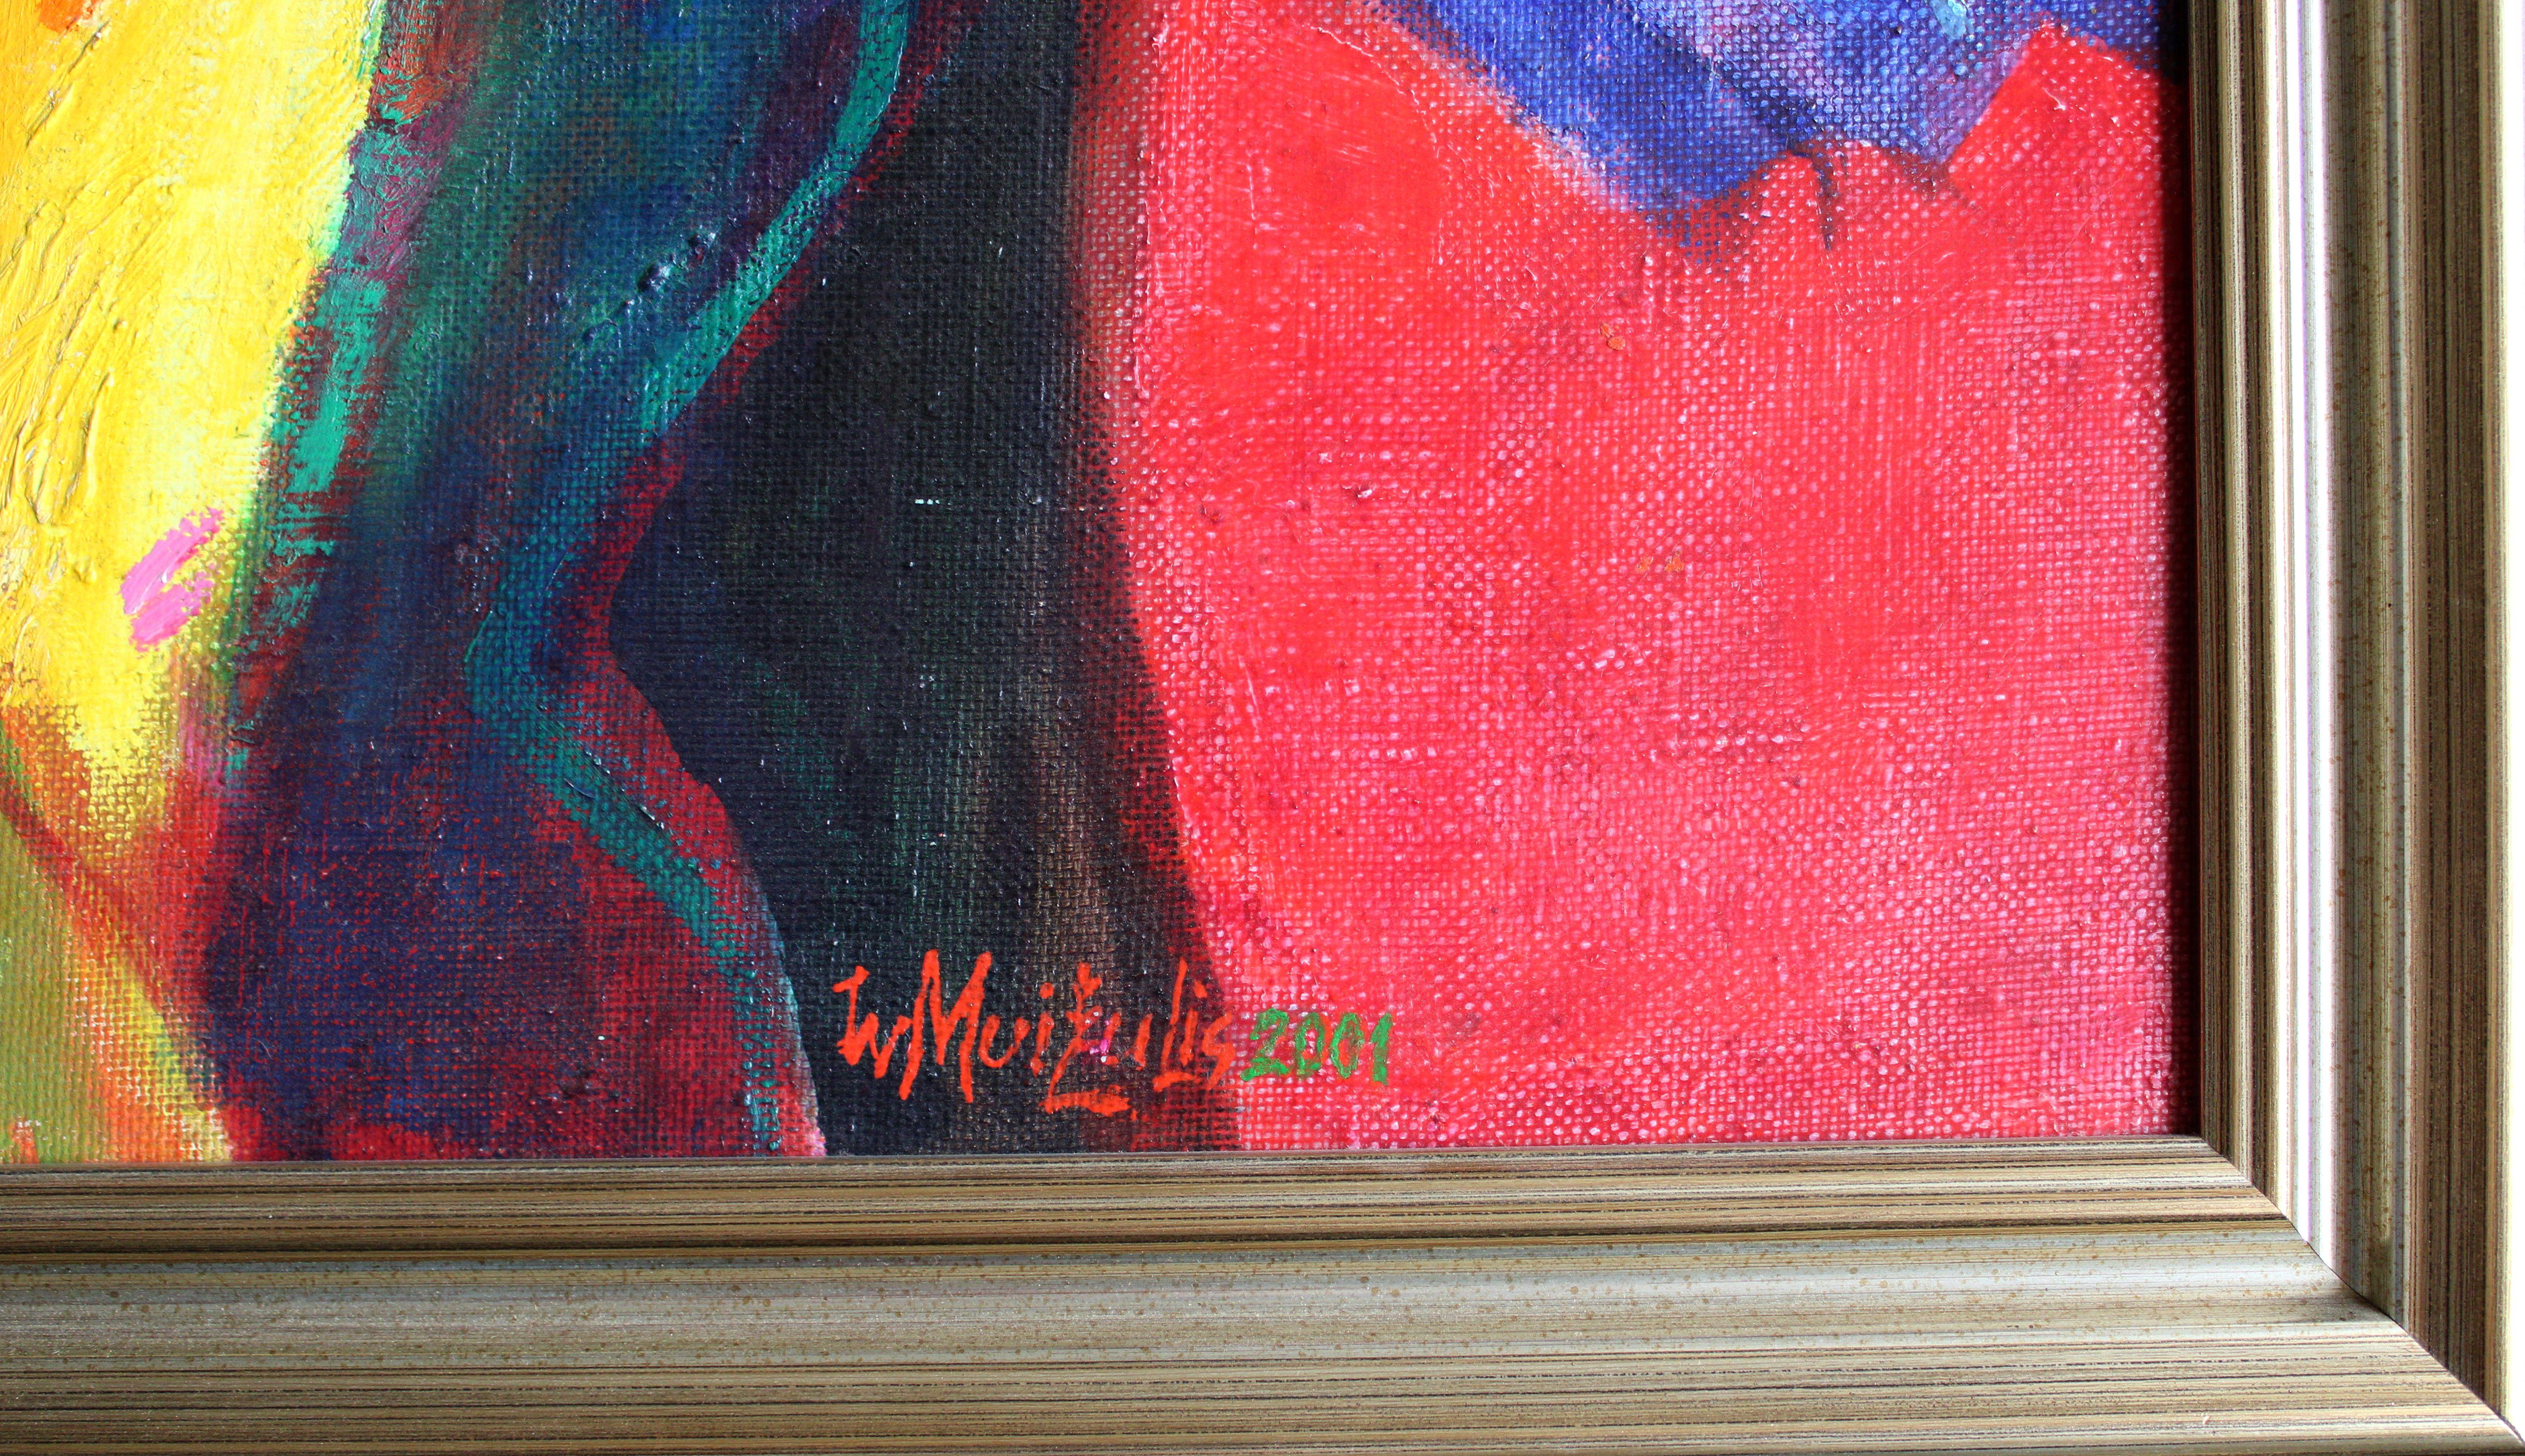 Licht 2001. Leinwand, Öl, 92x65 cm

Das Kunstwerk zeigt eine farbenfrohe und abstrakte Frauenfigur vor einem Hintergrund aus rosa und blauen Farbtönen.

Im Mittelpunkt des Gemäldes steht die abstrakt dargestellte Frauenfigur. Der Künstler verwendet